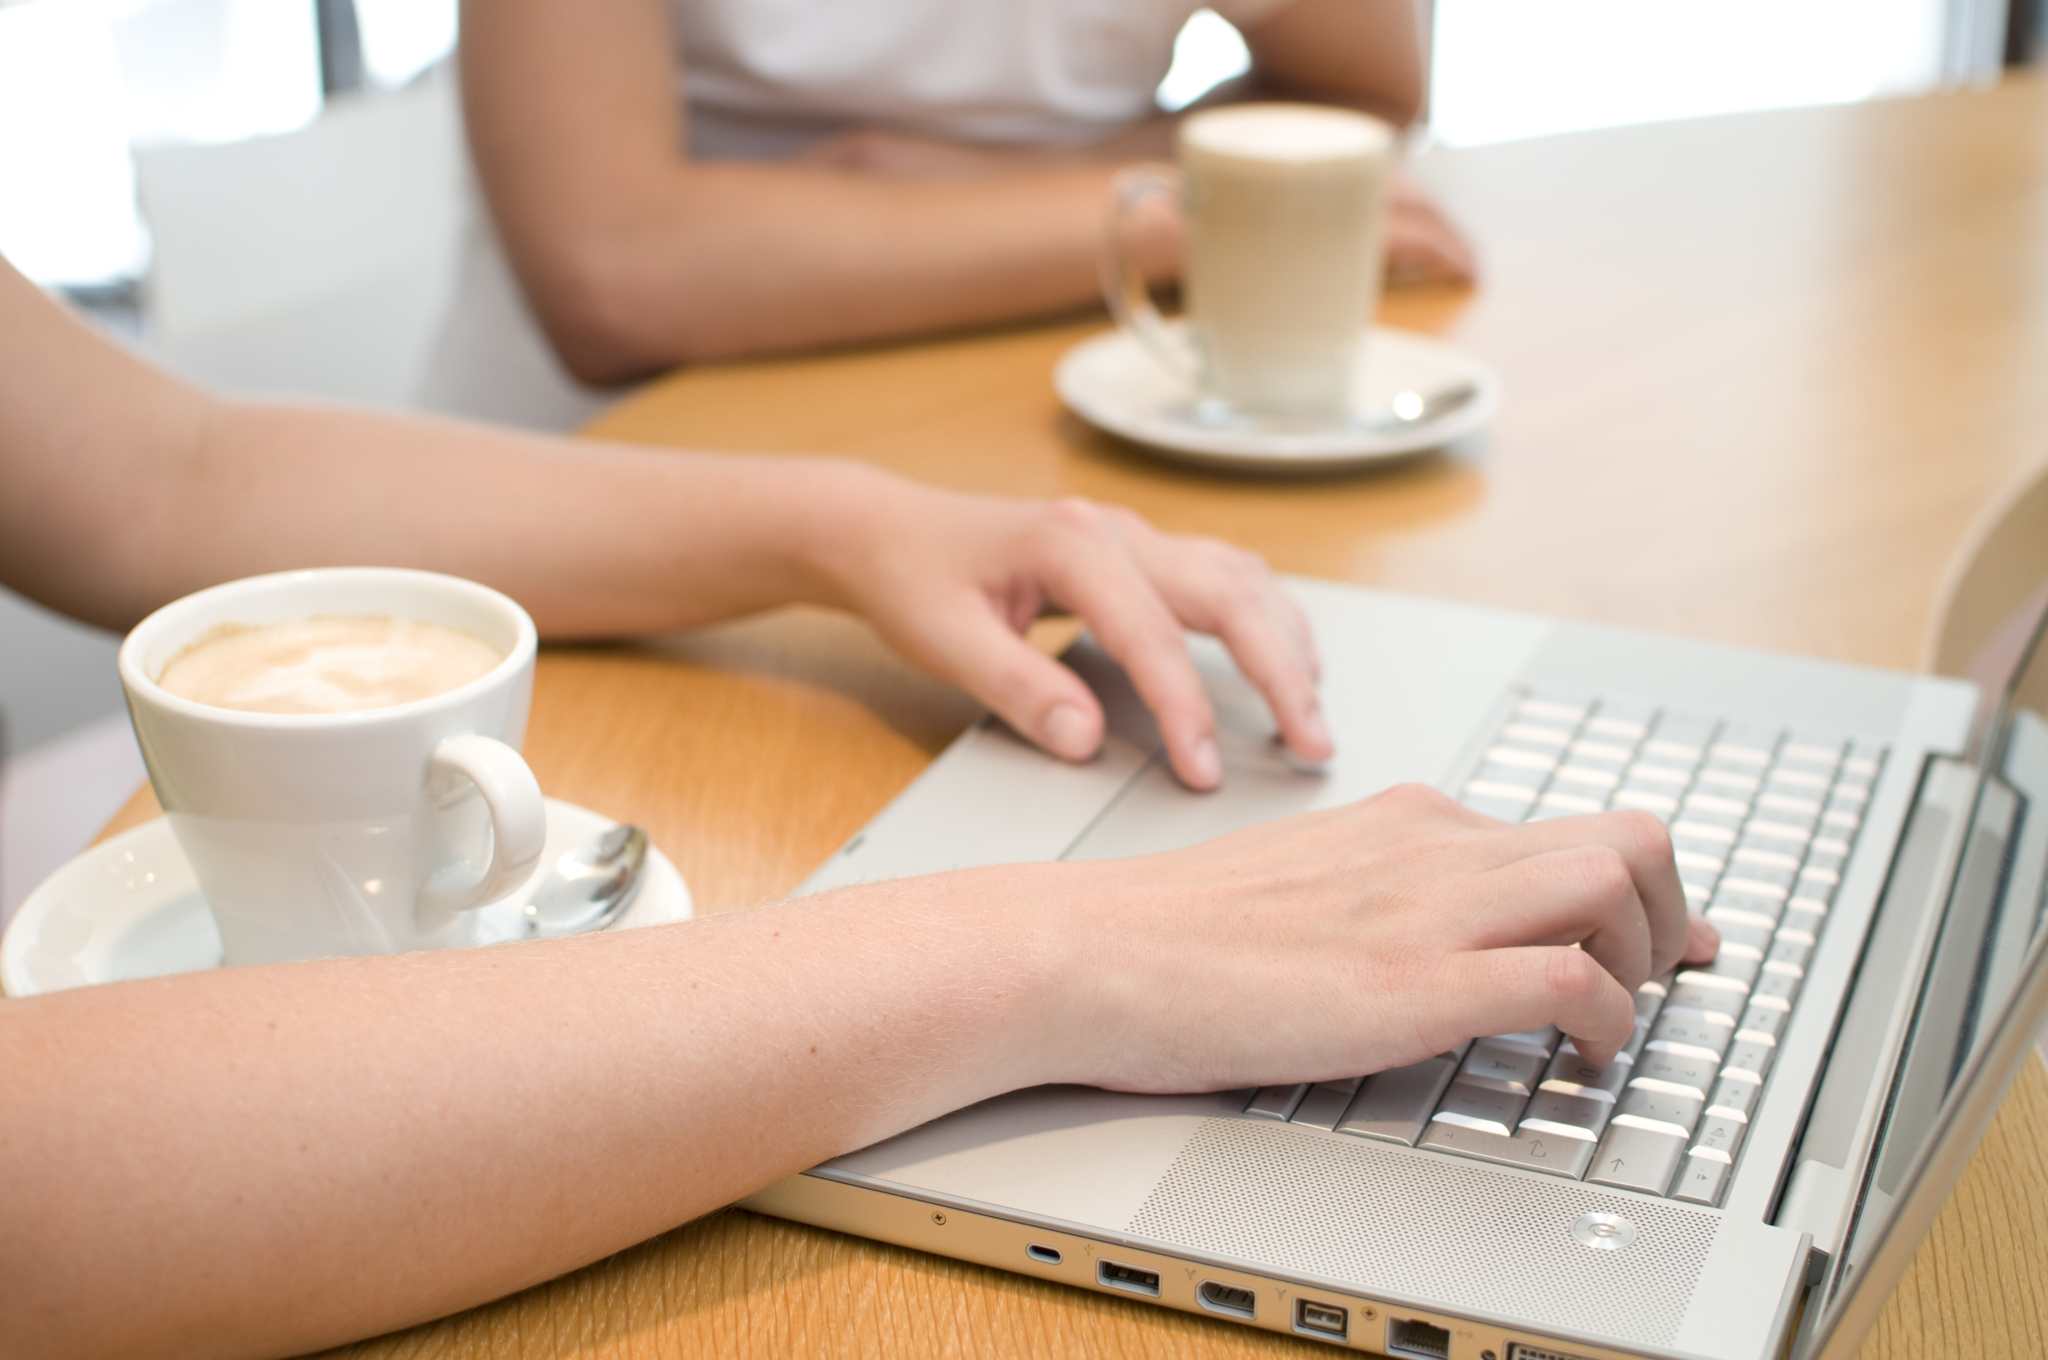 Im Fokus sind 2 Hände auf einer Laptop-Tastatur und davor steht eine Tasse Kaffee